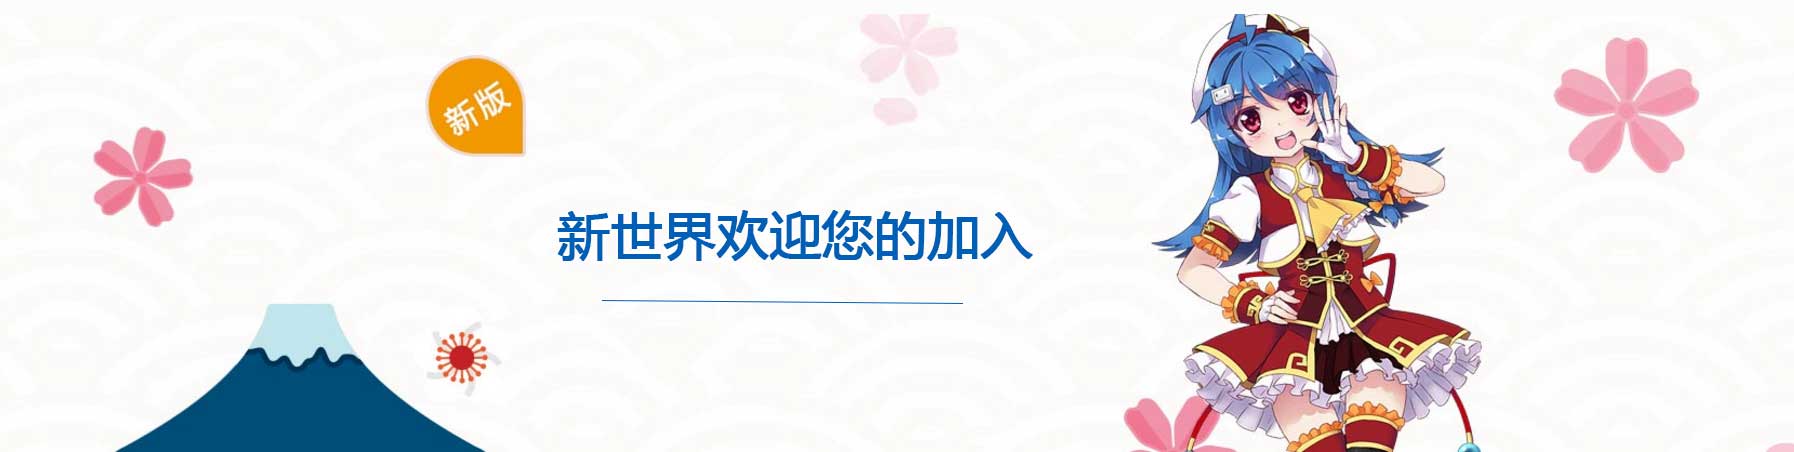 郑州日语学习培训--新世界欢迎您的加入